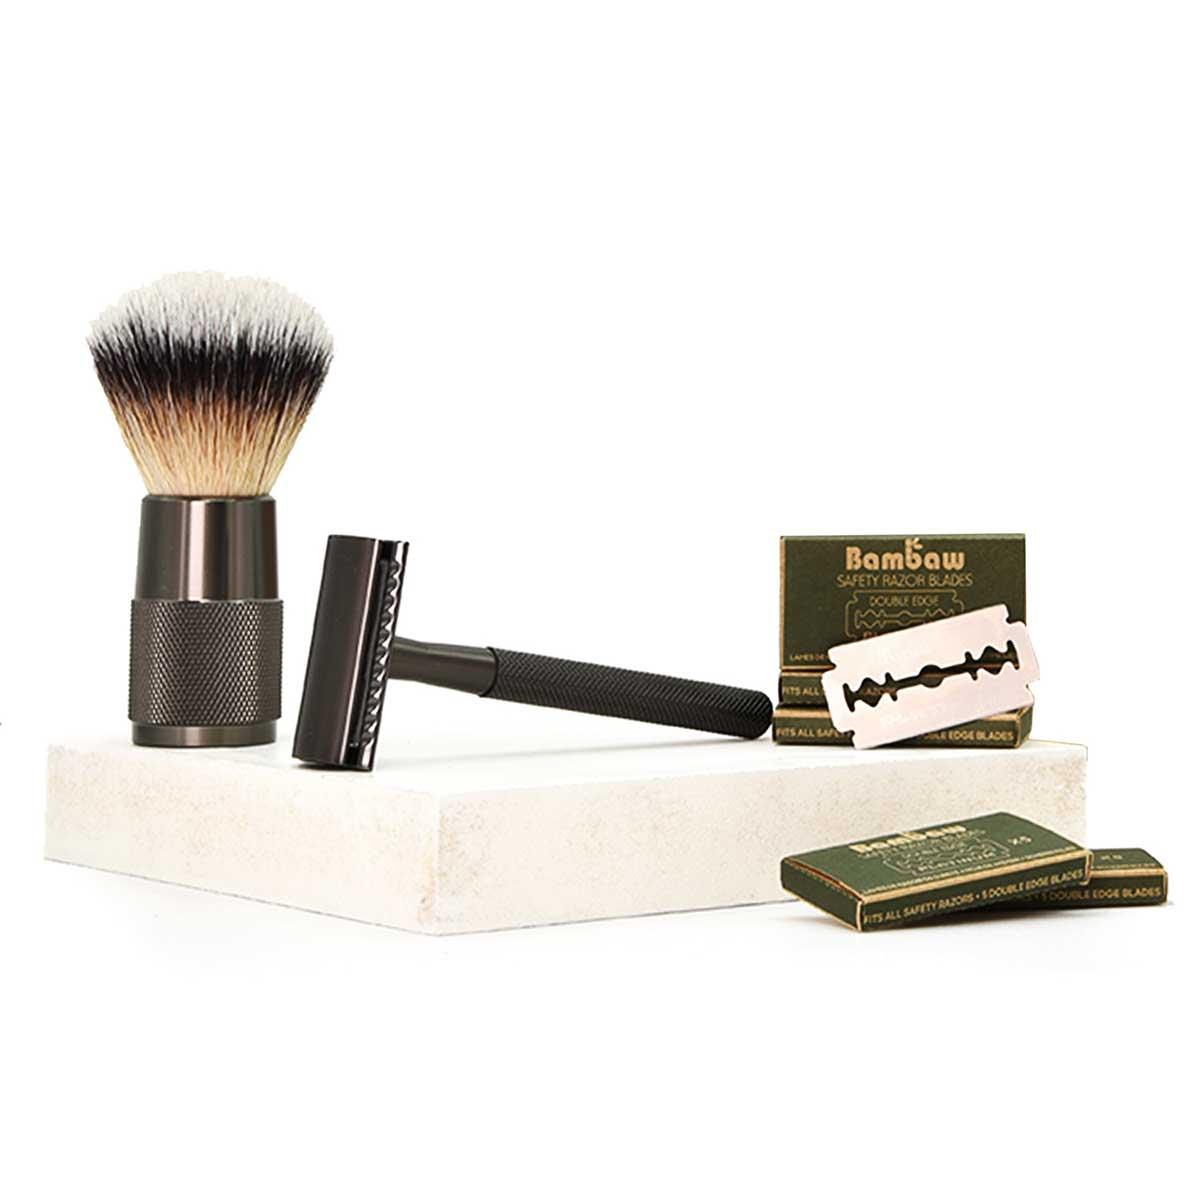 bambaw shaving gift set with brush